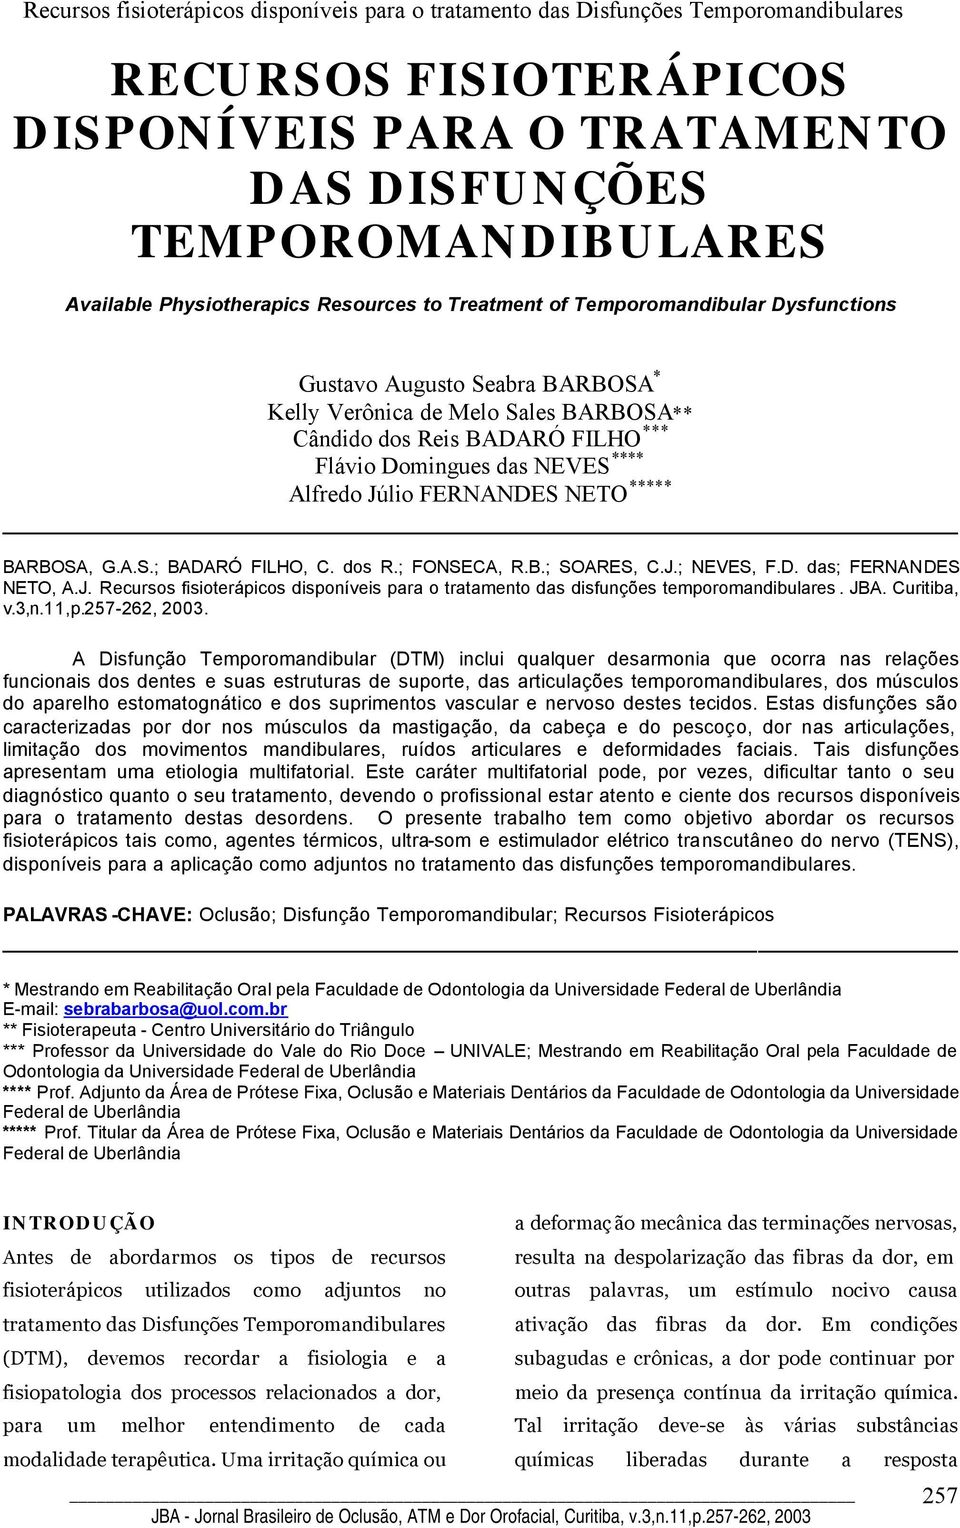 B.; SOARES, C.J.; NEVES, F.D. das; FERNANDES NETO, A.J. Recursos fisioterápicos disponíveis para o tratamento das disfunções temporomandibulares. JBA. Curitiba, v.3,n.11,p.257-262, 2003.